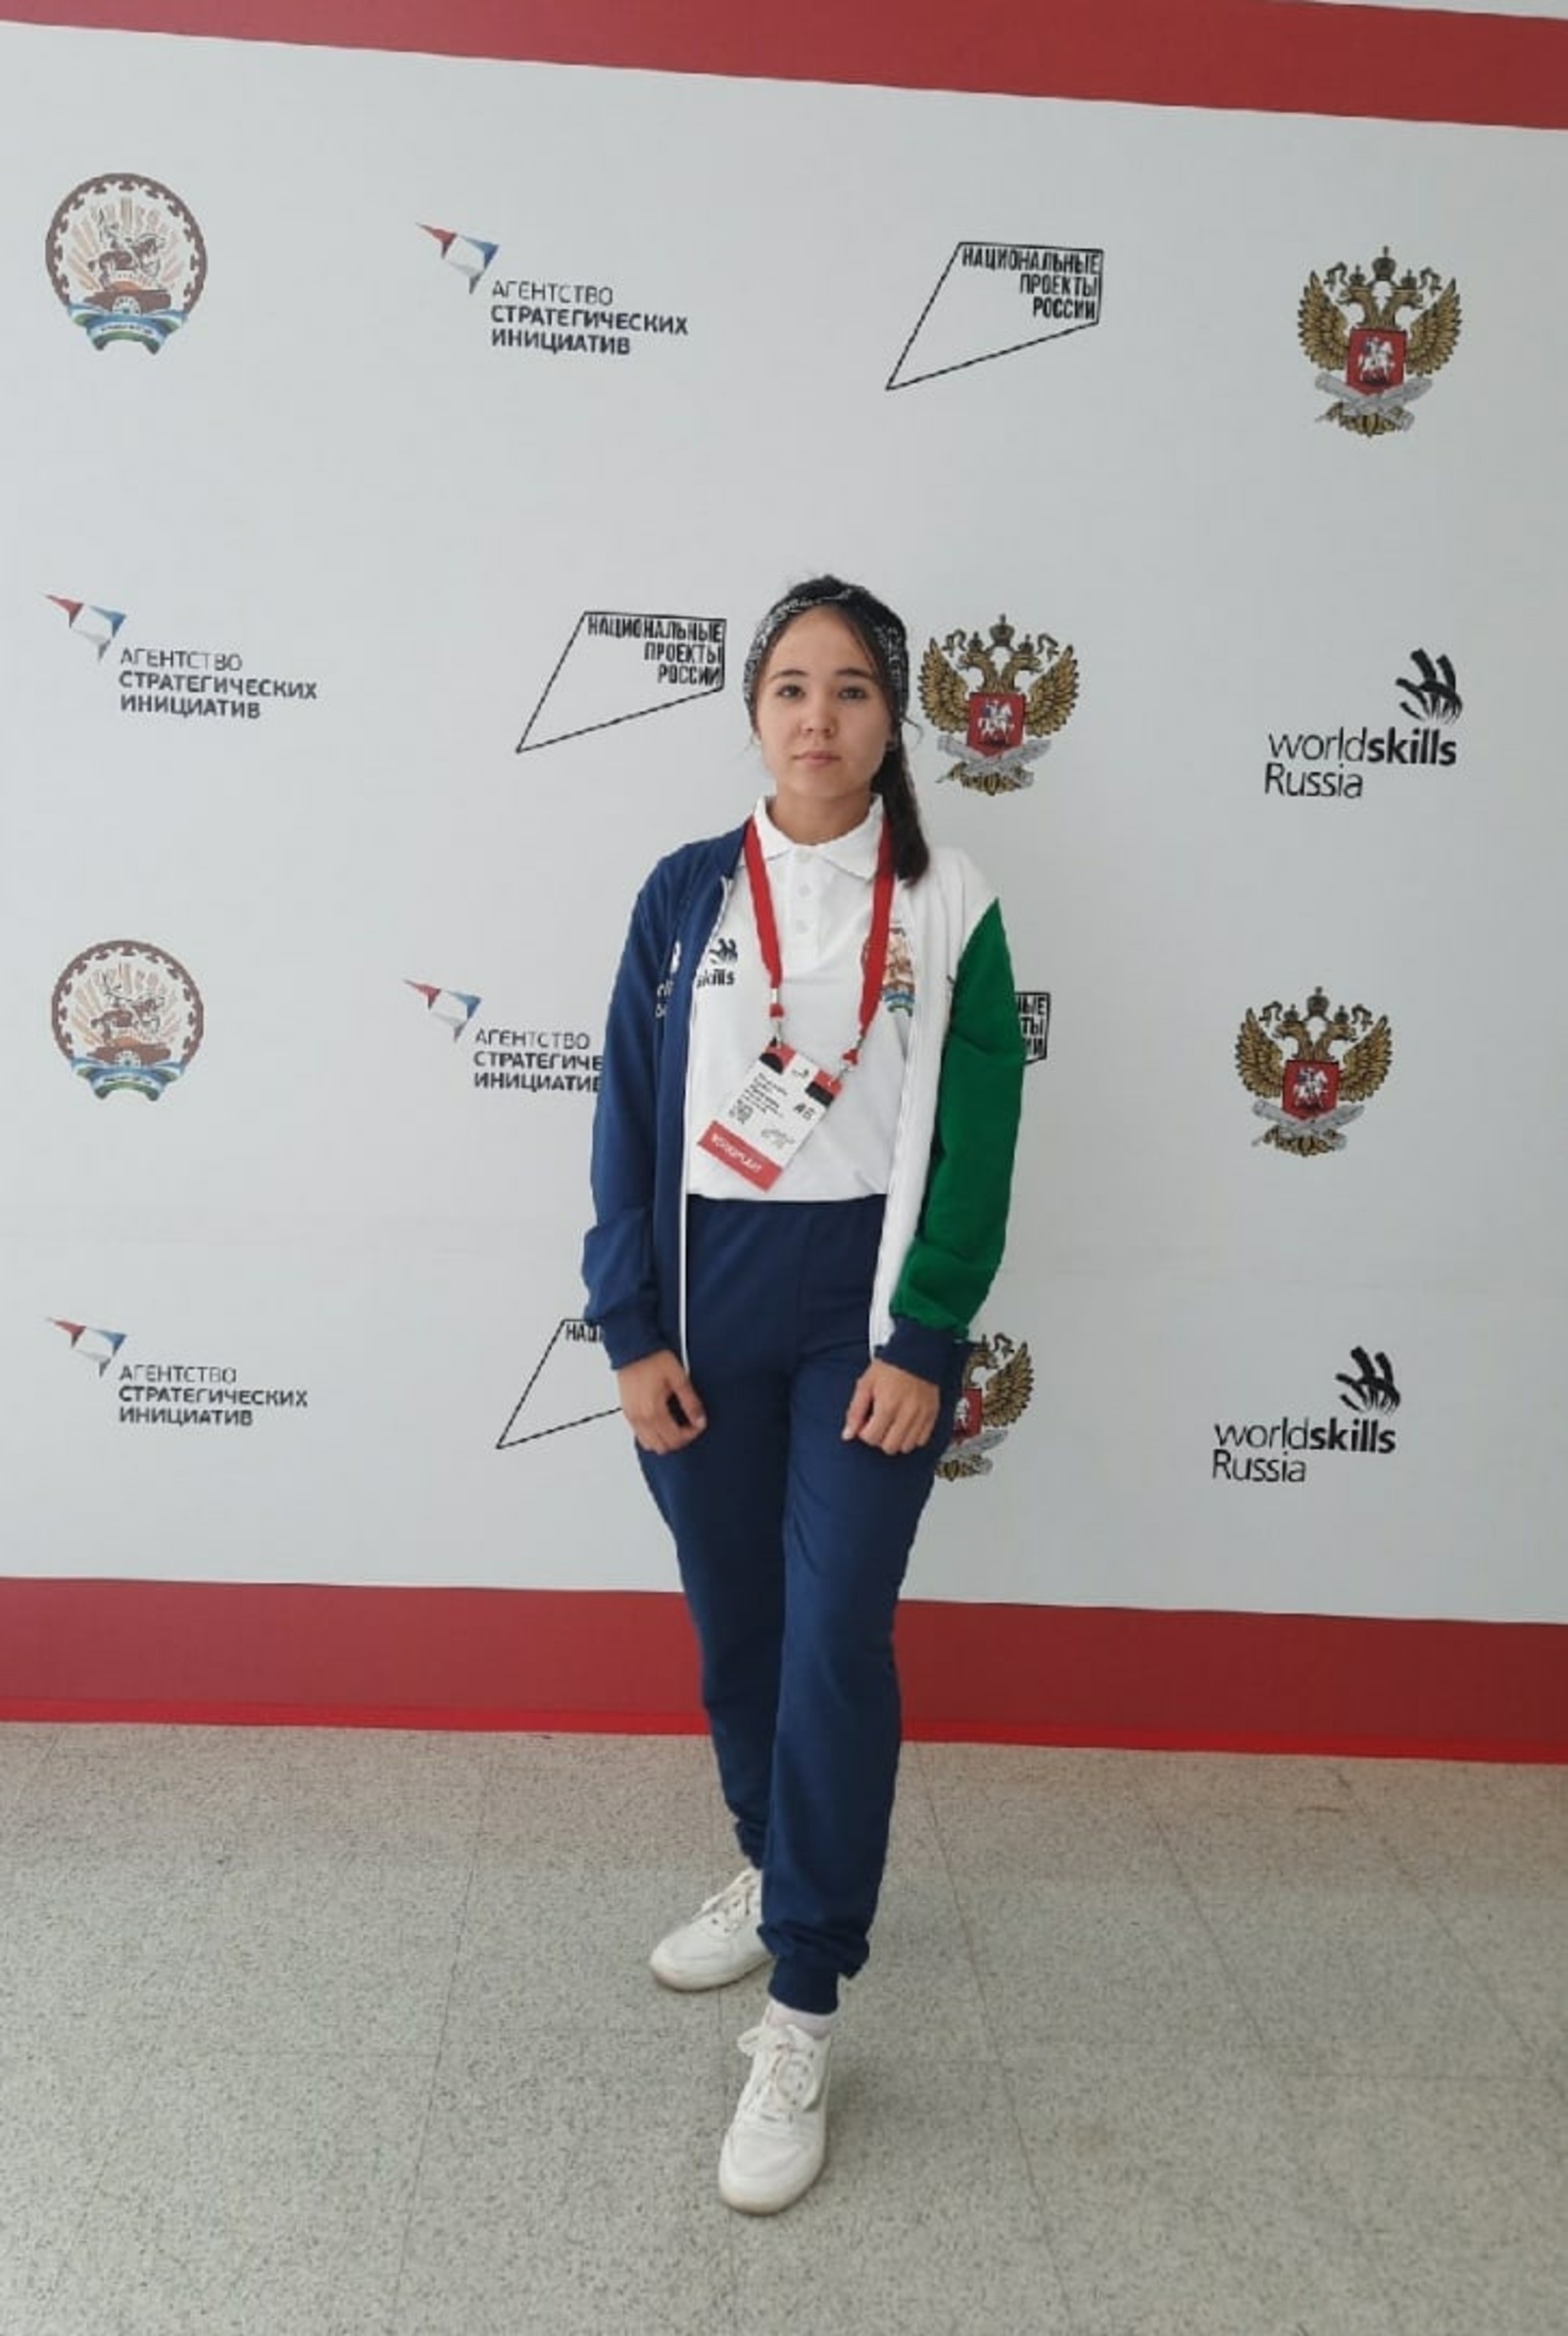 Выль Татышлы школаын дышетскем ныл WorldSkills чемпионатэ пыриськиз